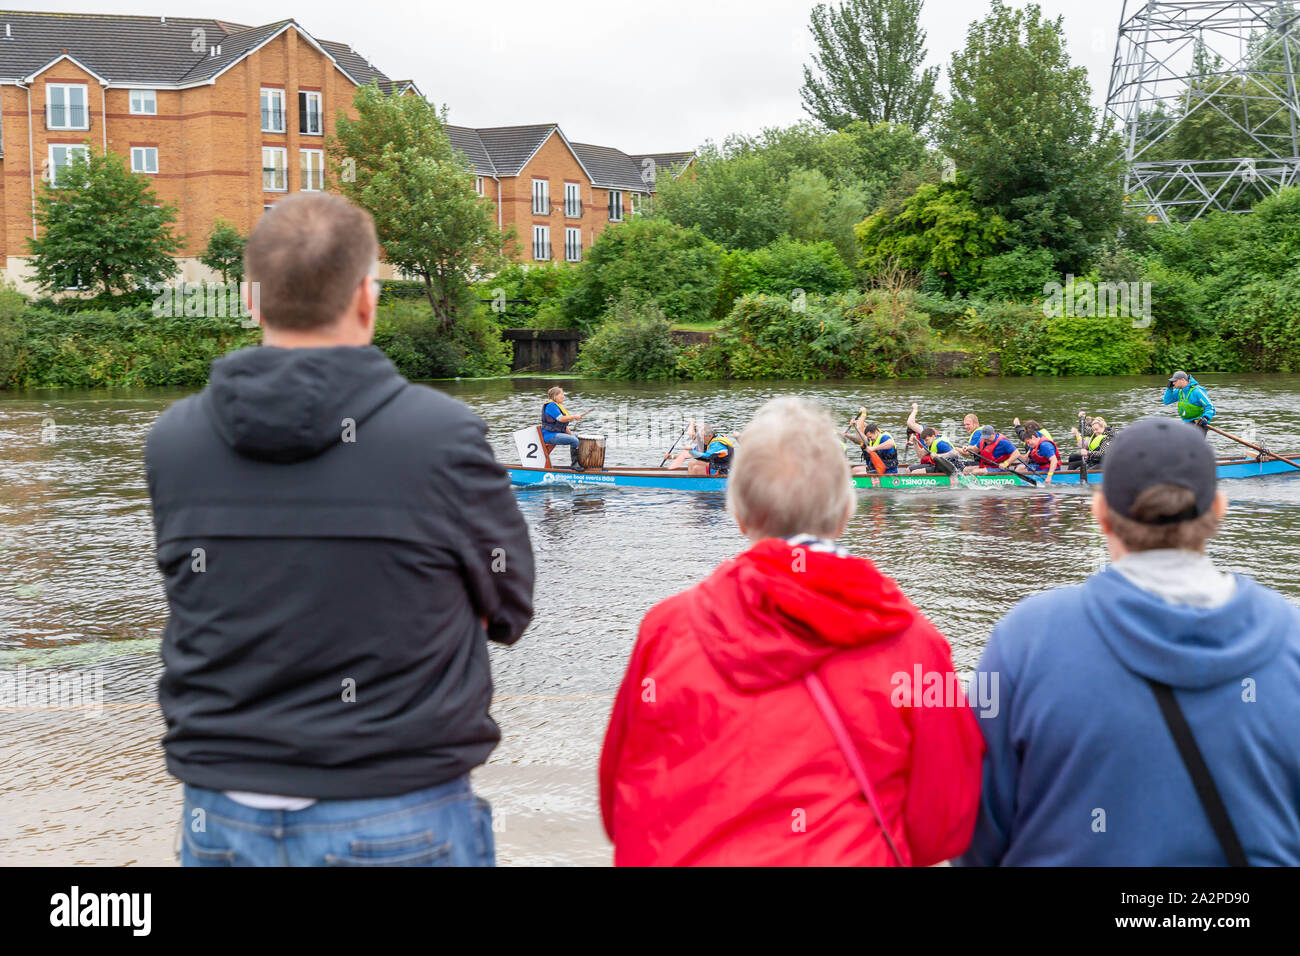 Persone in piedi sulla riva del fiume a guardare la gara di dragon boat 2019 in aiuto di San Rocco's ospizio, tenutasi a Warrington Rowing Club, Cheshire, en Foto Stock